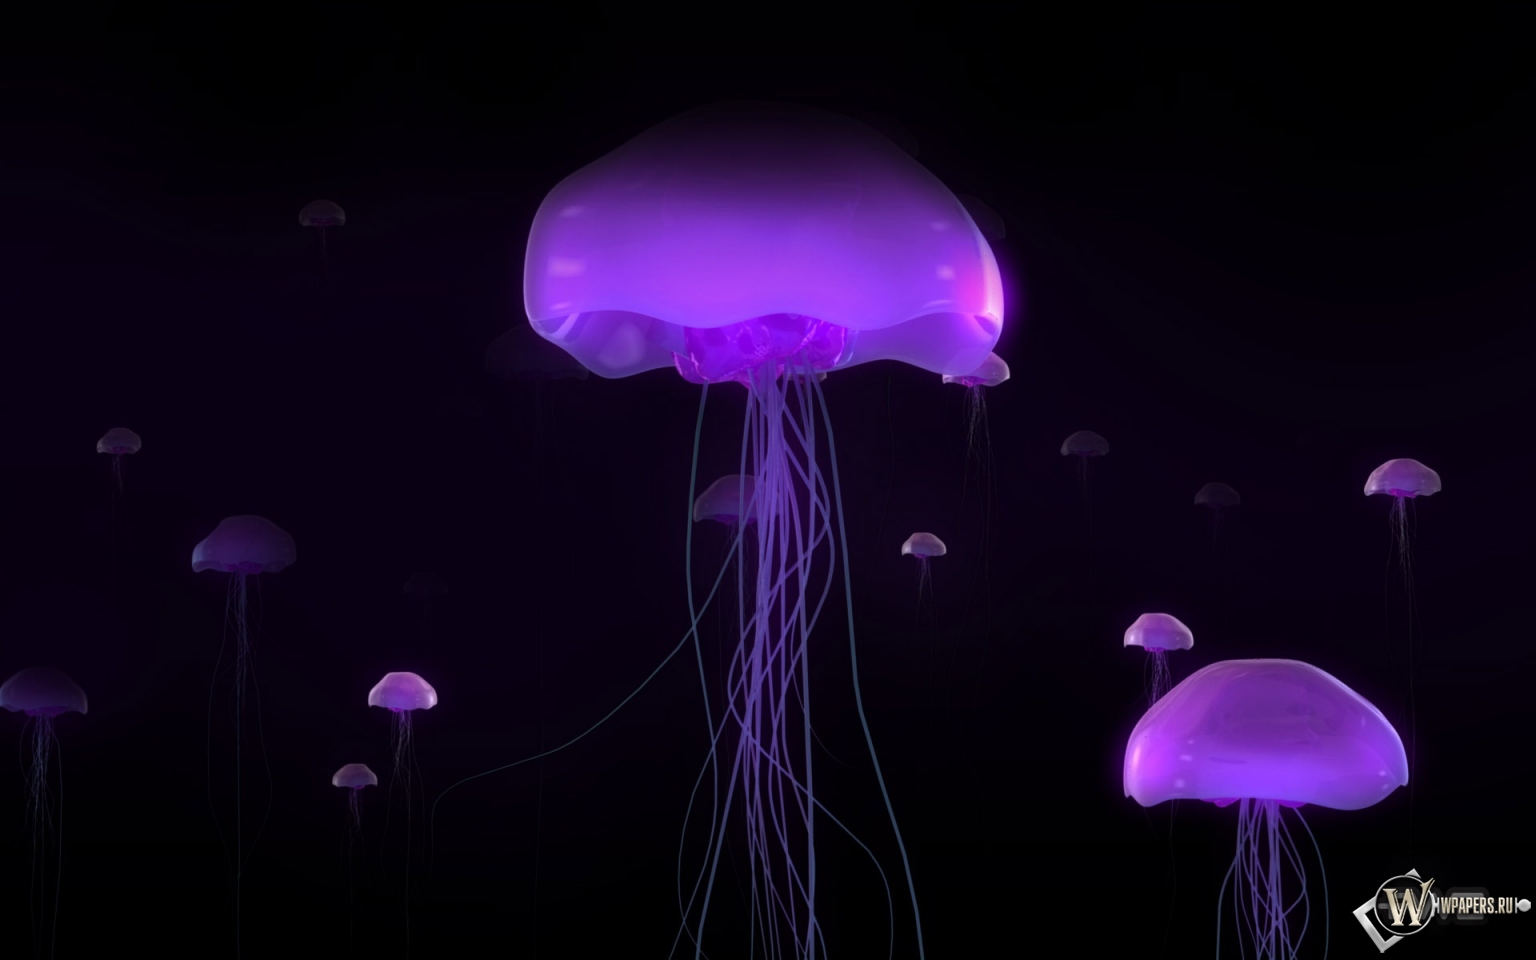 Фиолетовые медузы 1536x960